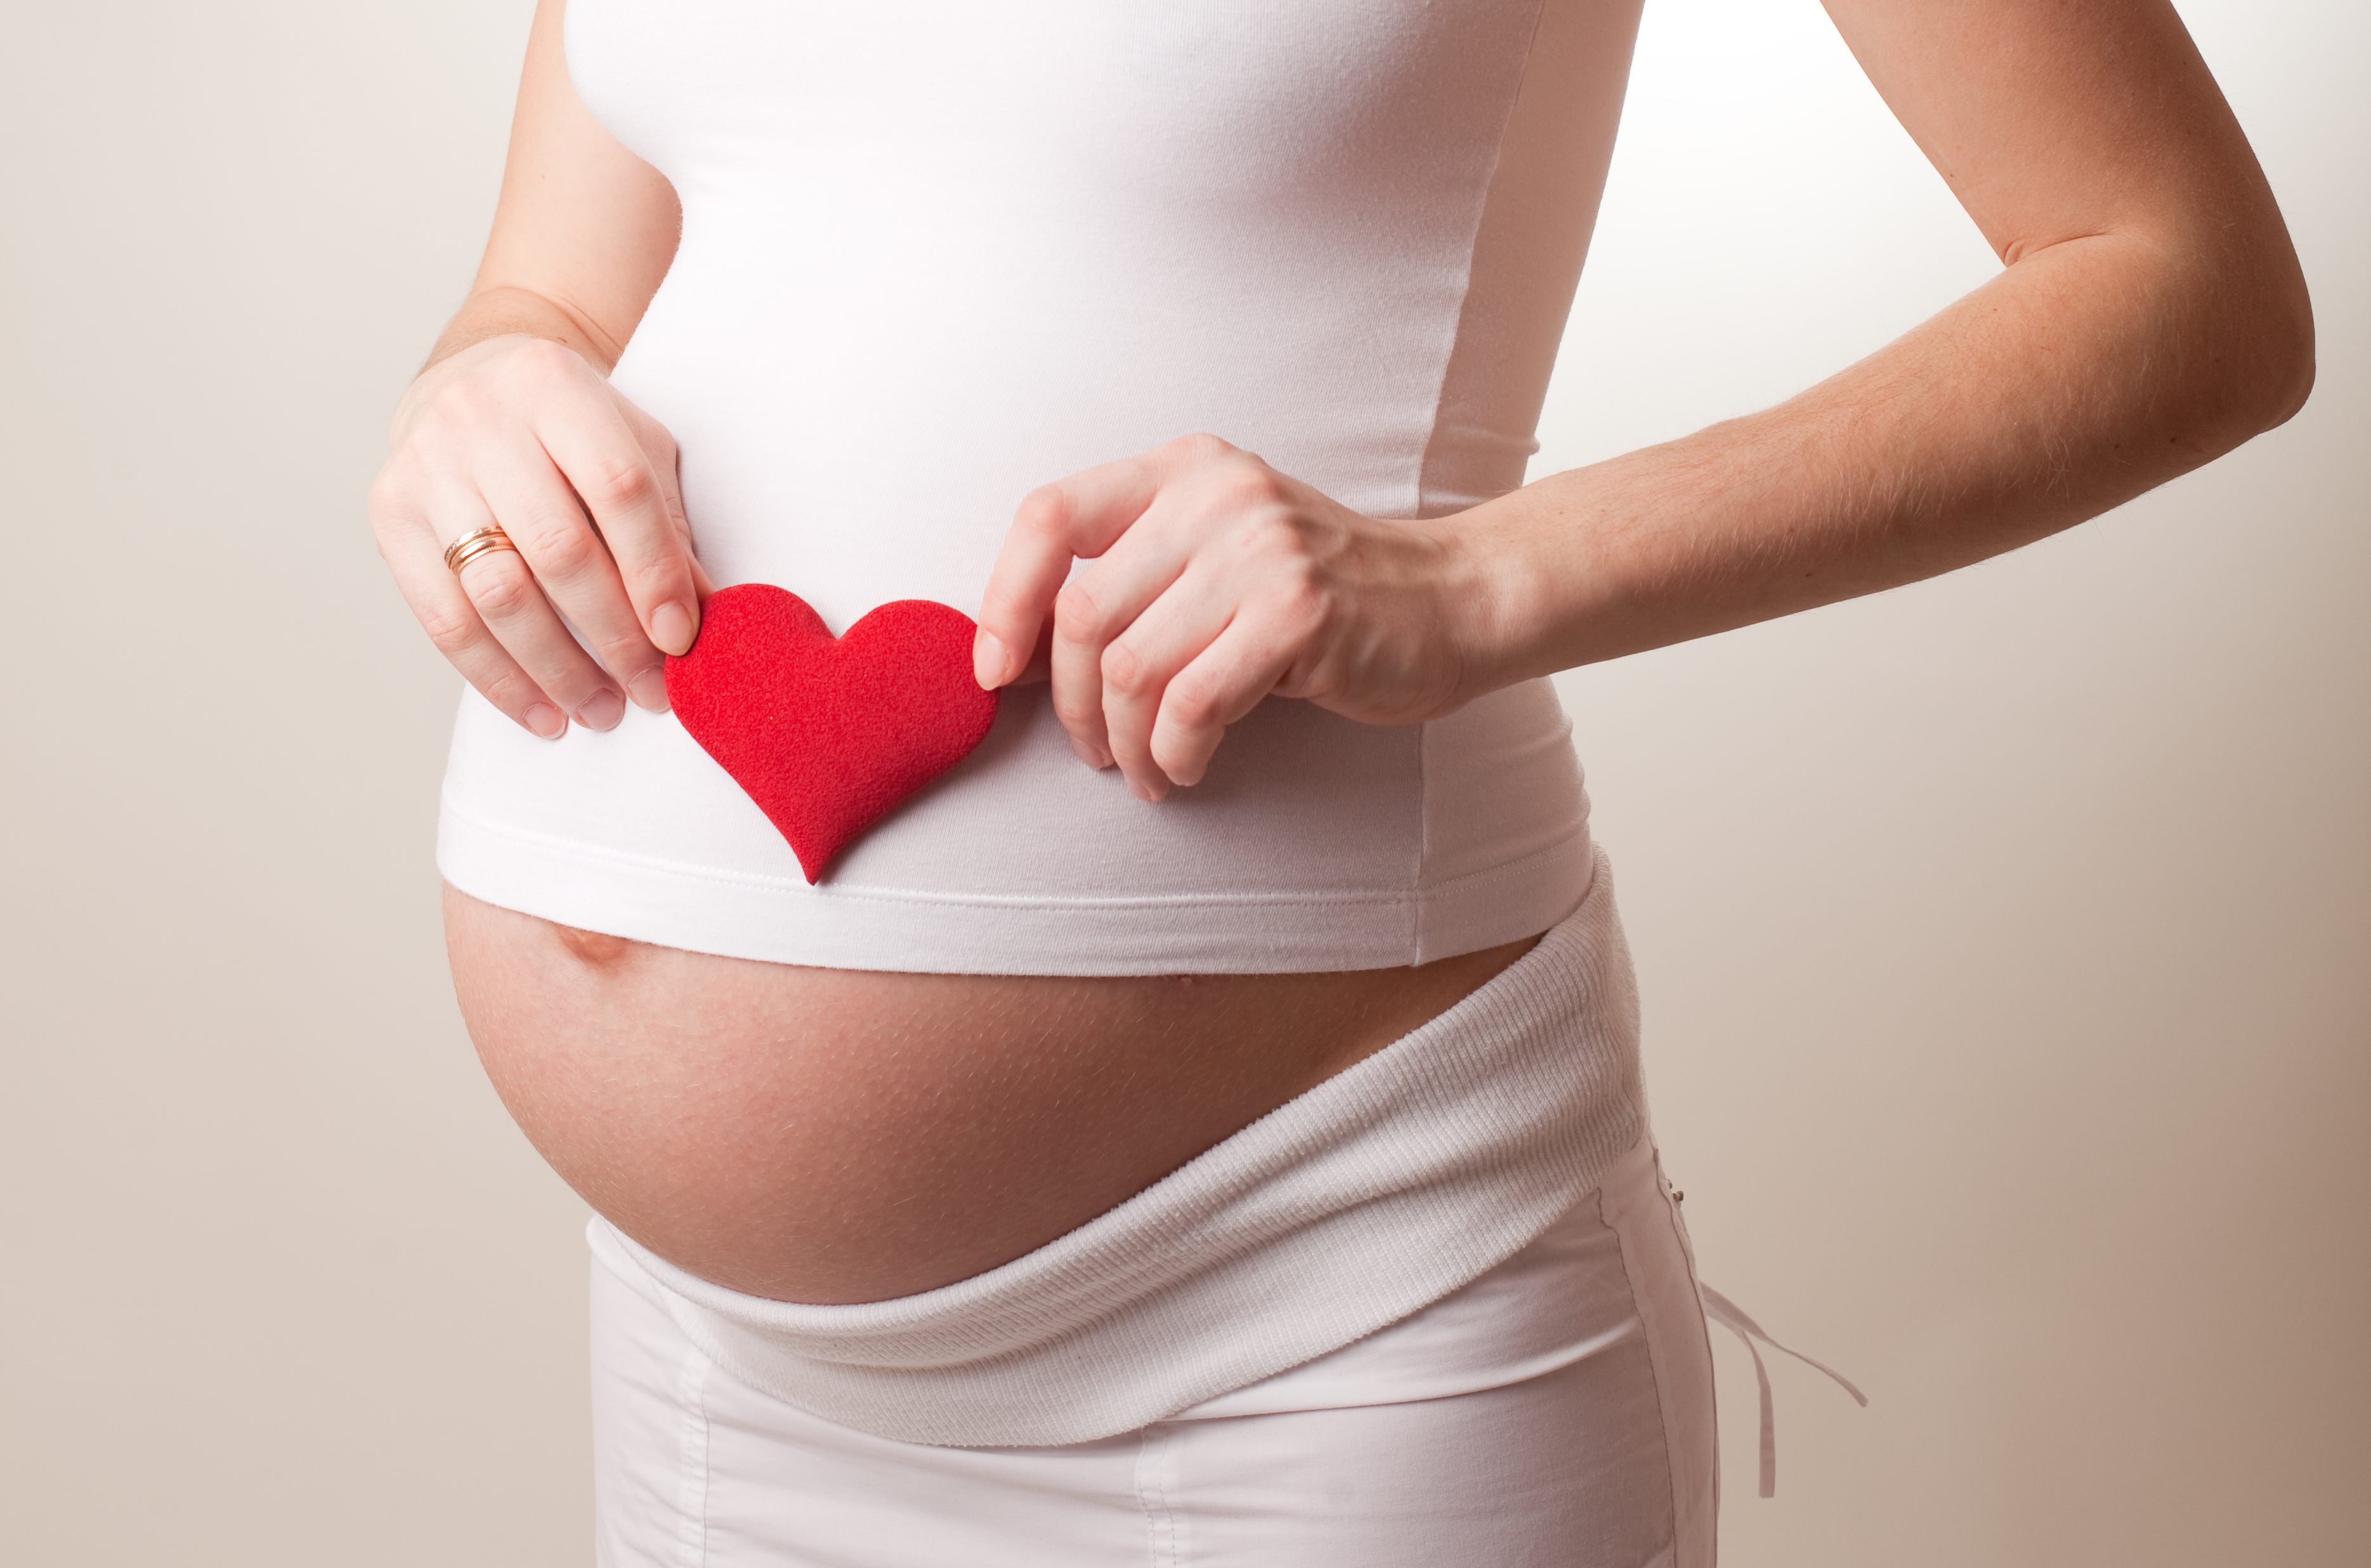 15 интересных фактов, которые в корне изменят представление о беременности